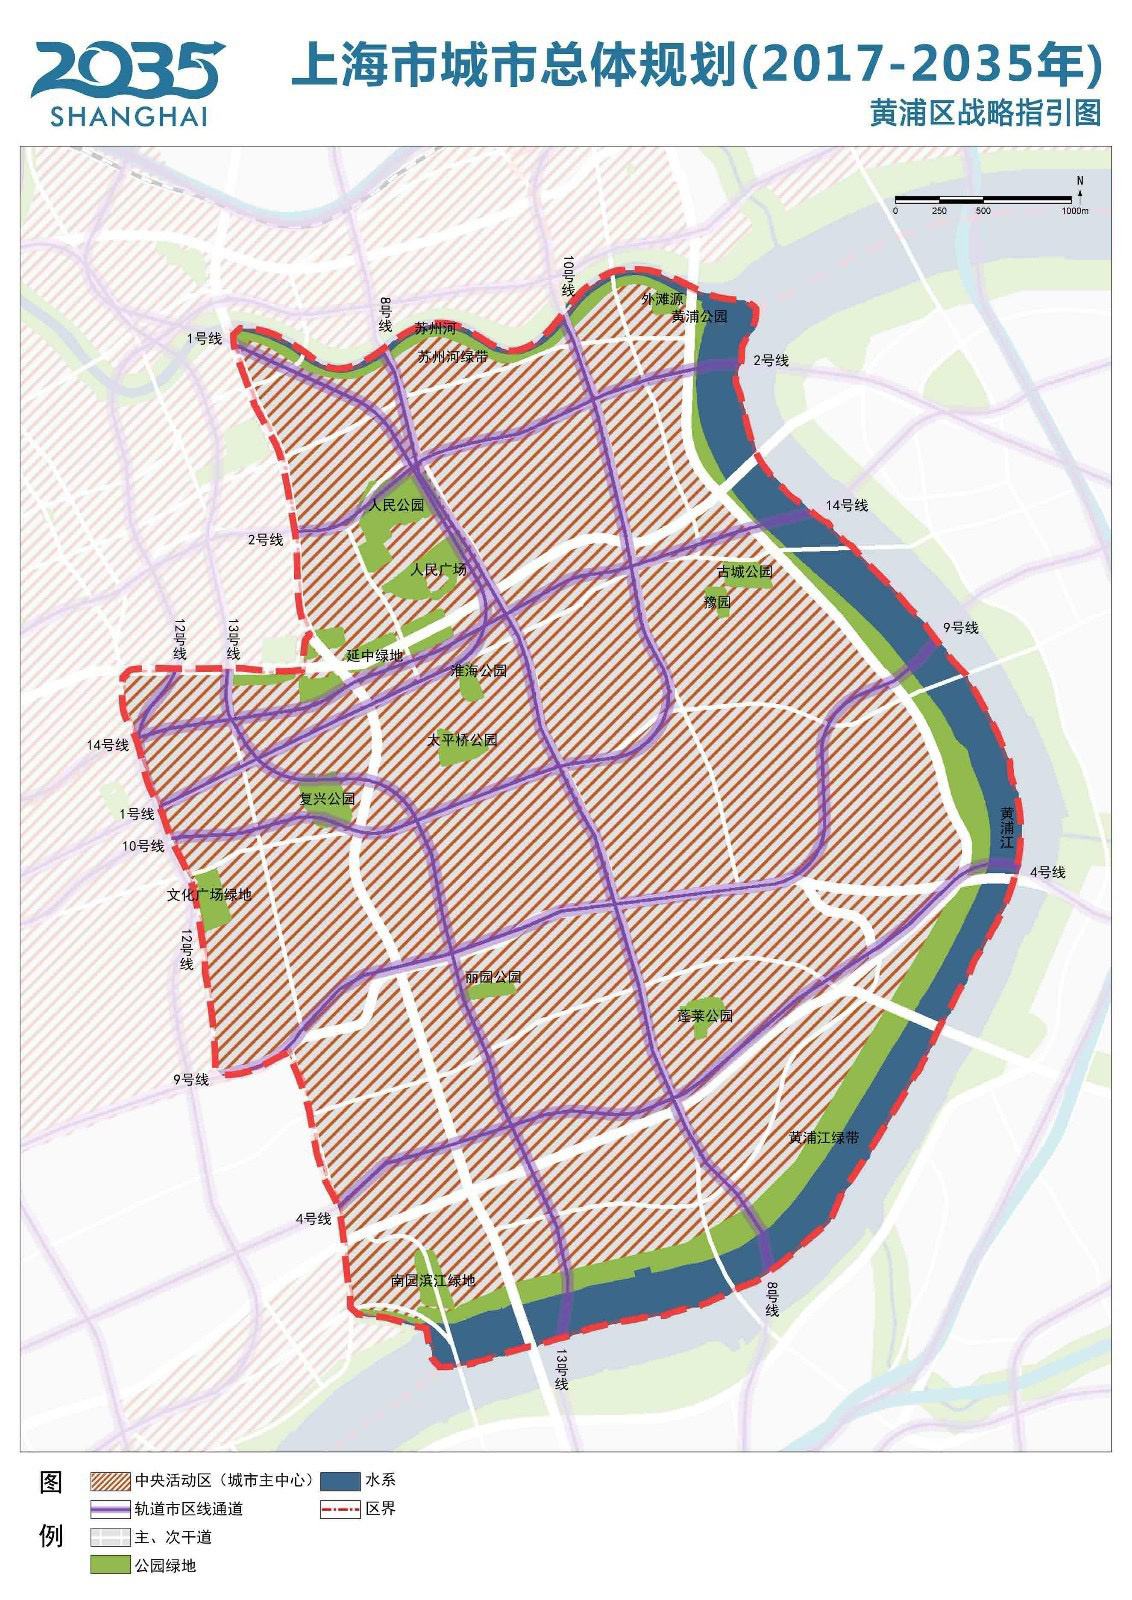 上海各区2035总体规划图2   松江在第6张哟,需要其他方面规划图会慢慢